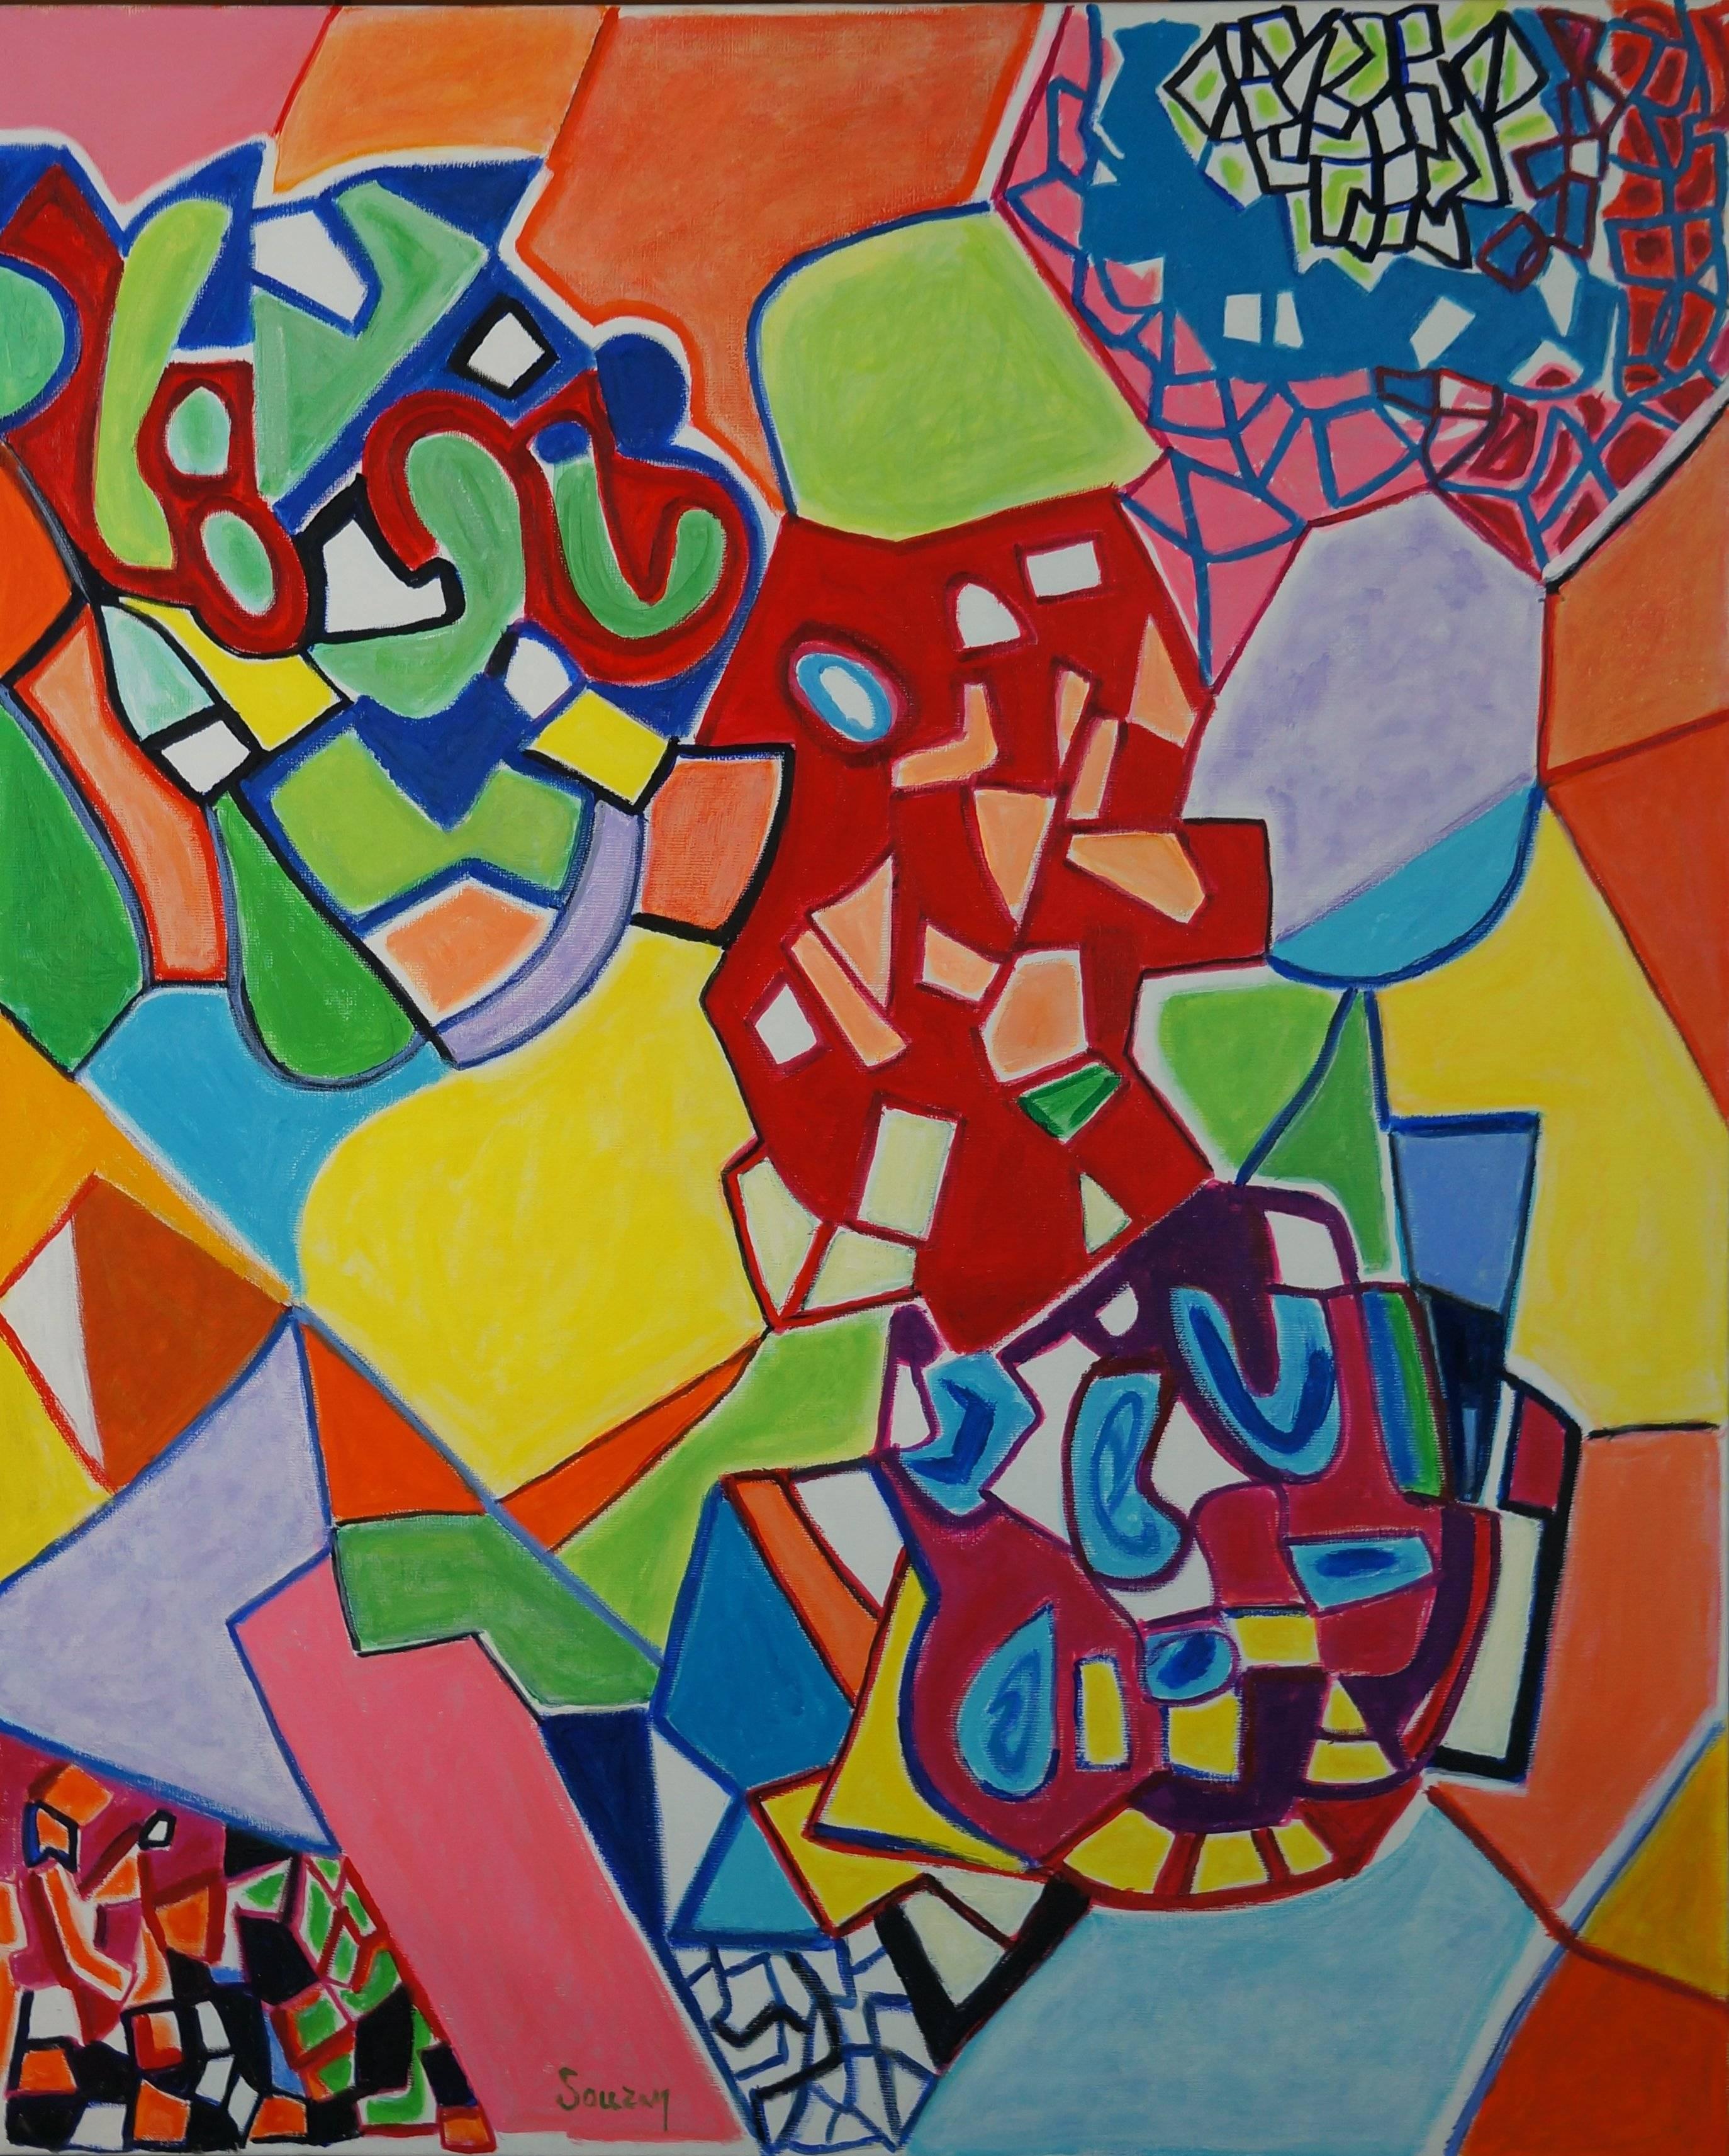 Abstract Painting Gérard Souzay - Composition abstraite S5, 1960-35 - peinture à l'huile, 100x81 cm